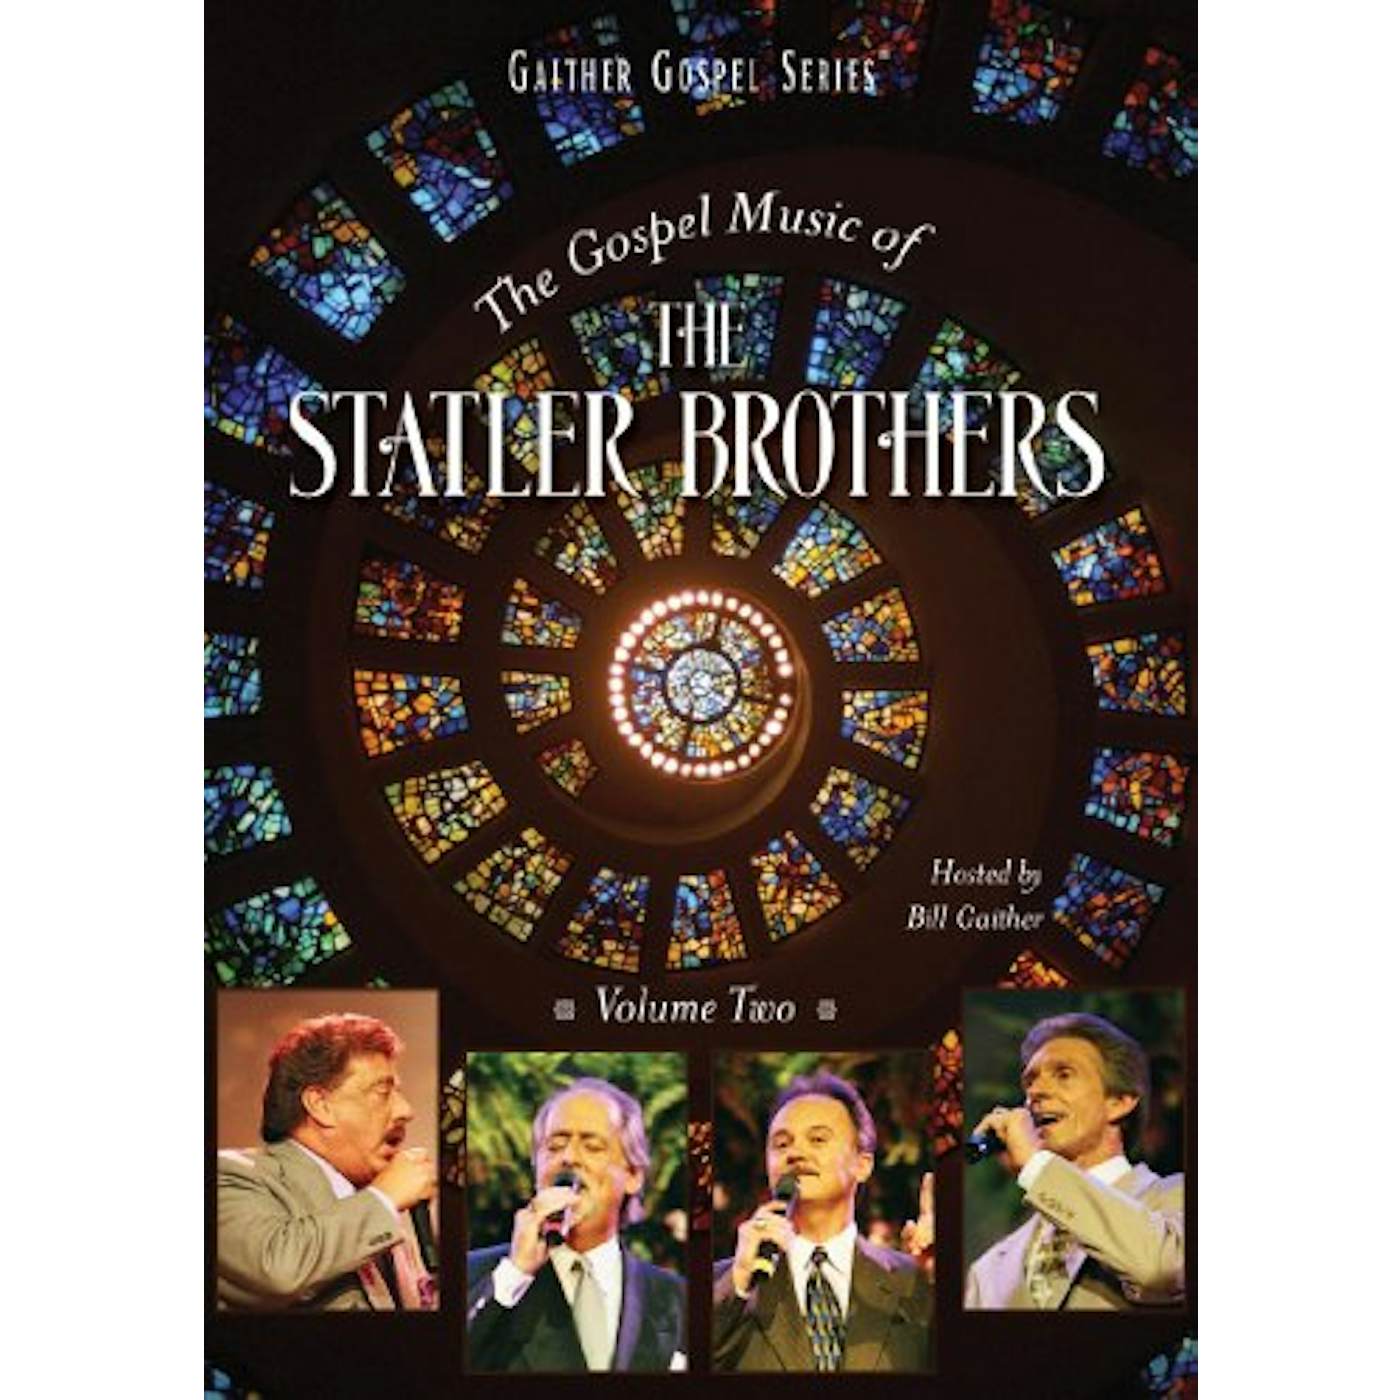 The Statler Brothers GOSPEL MUSIC 1 DVD